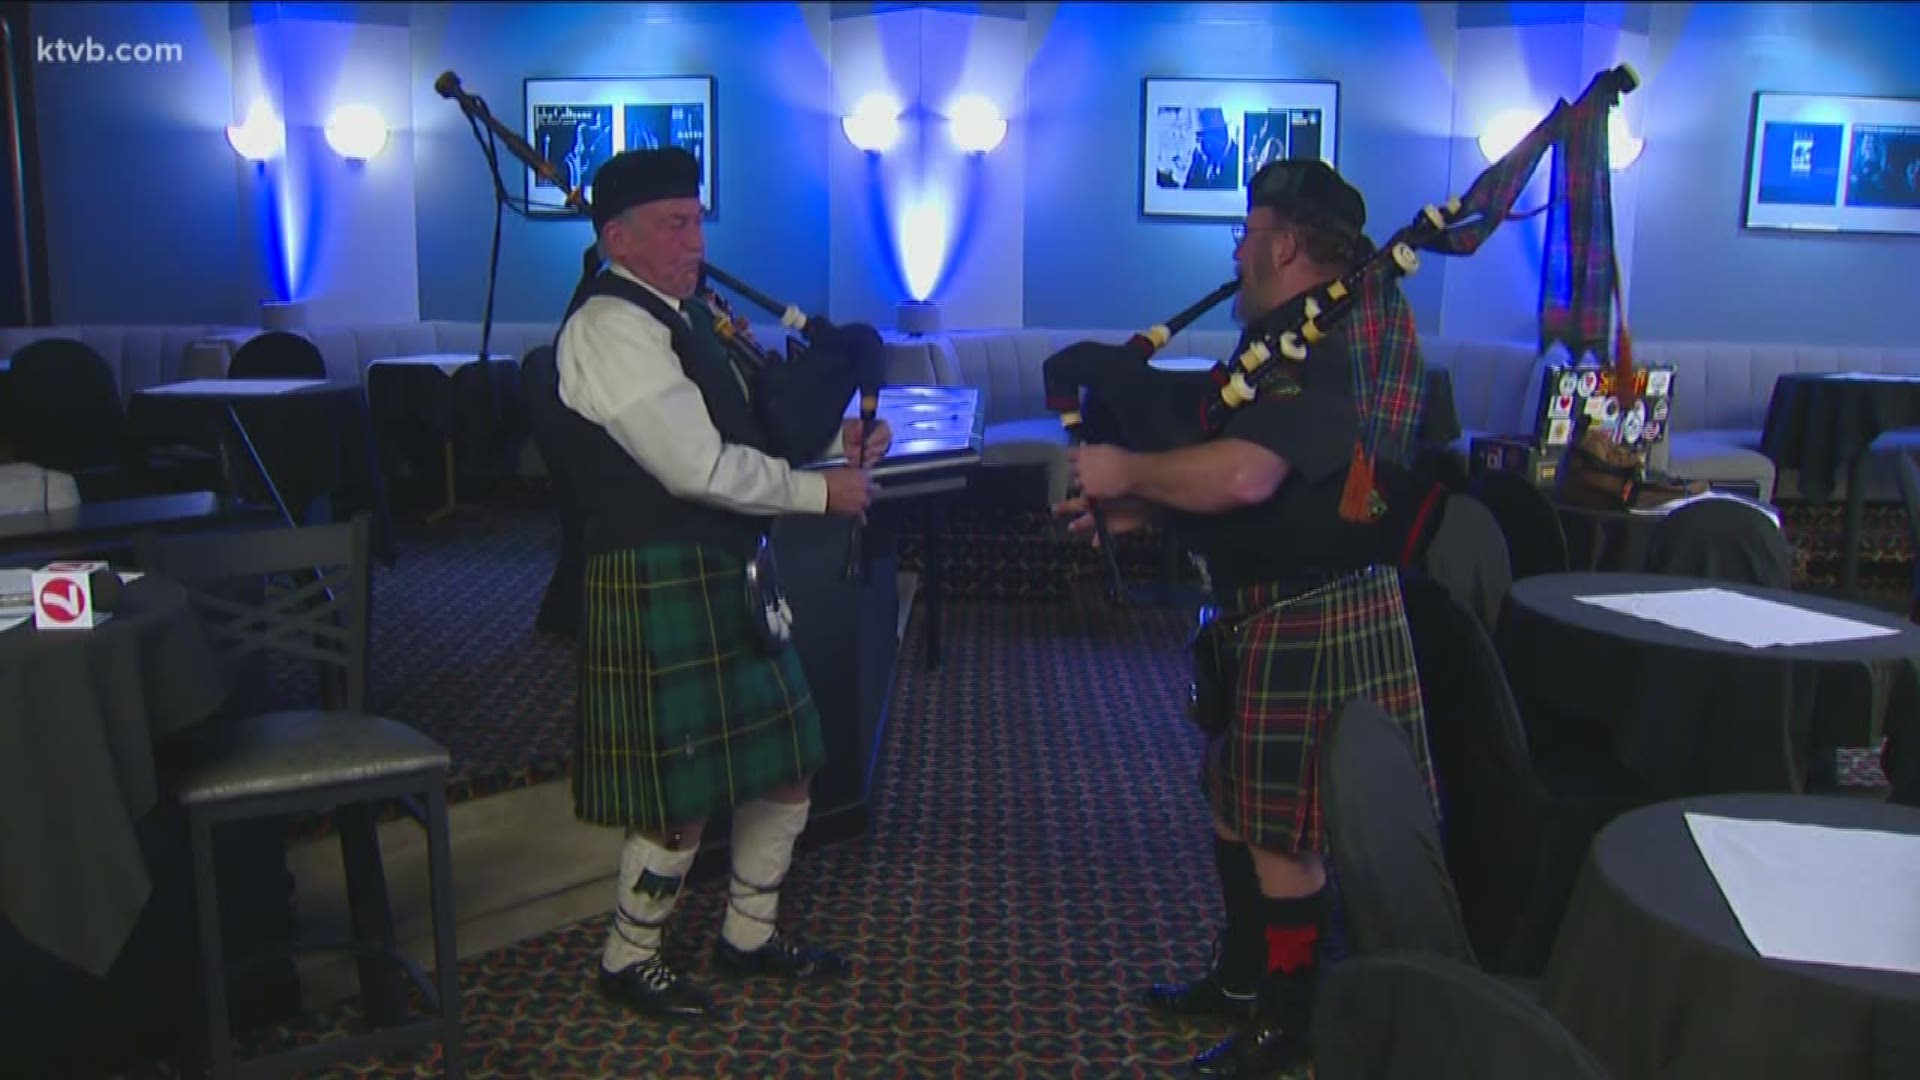 Robbie Burns Scottish Festival is this Saturday evening.